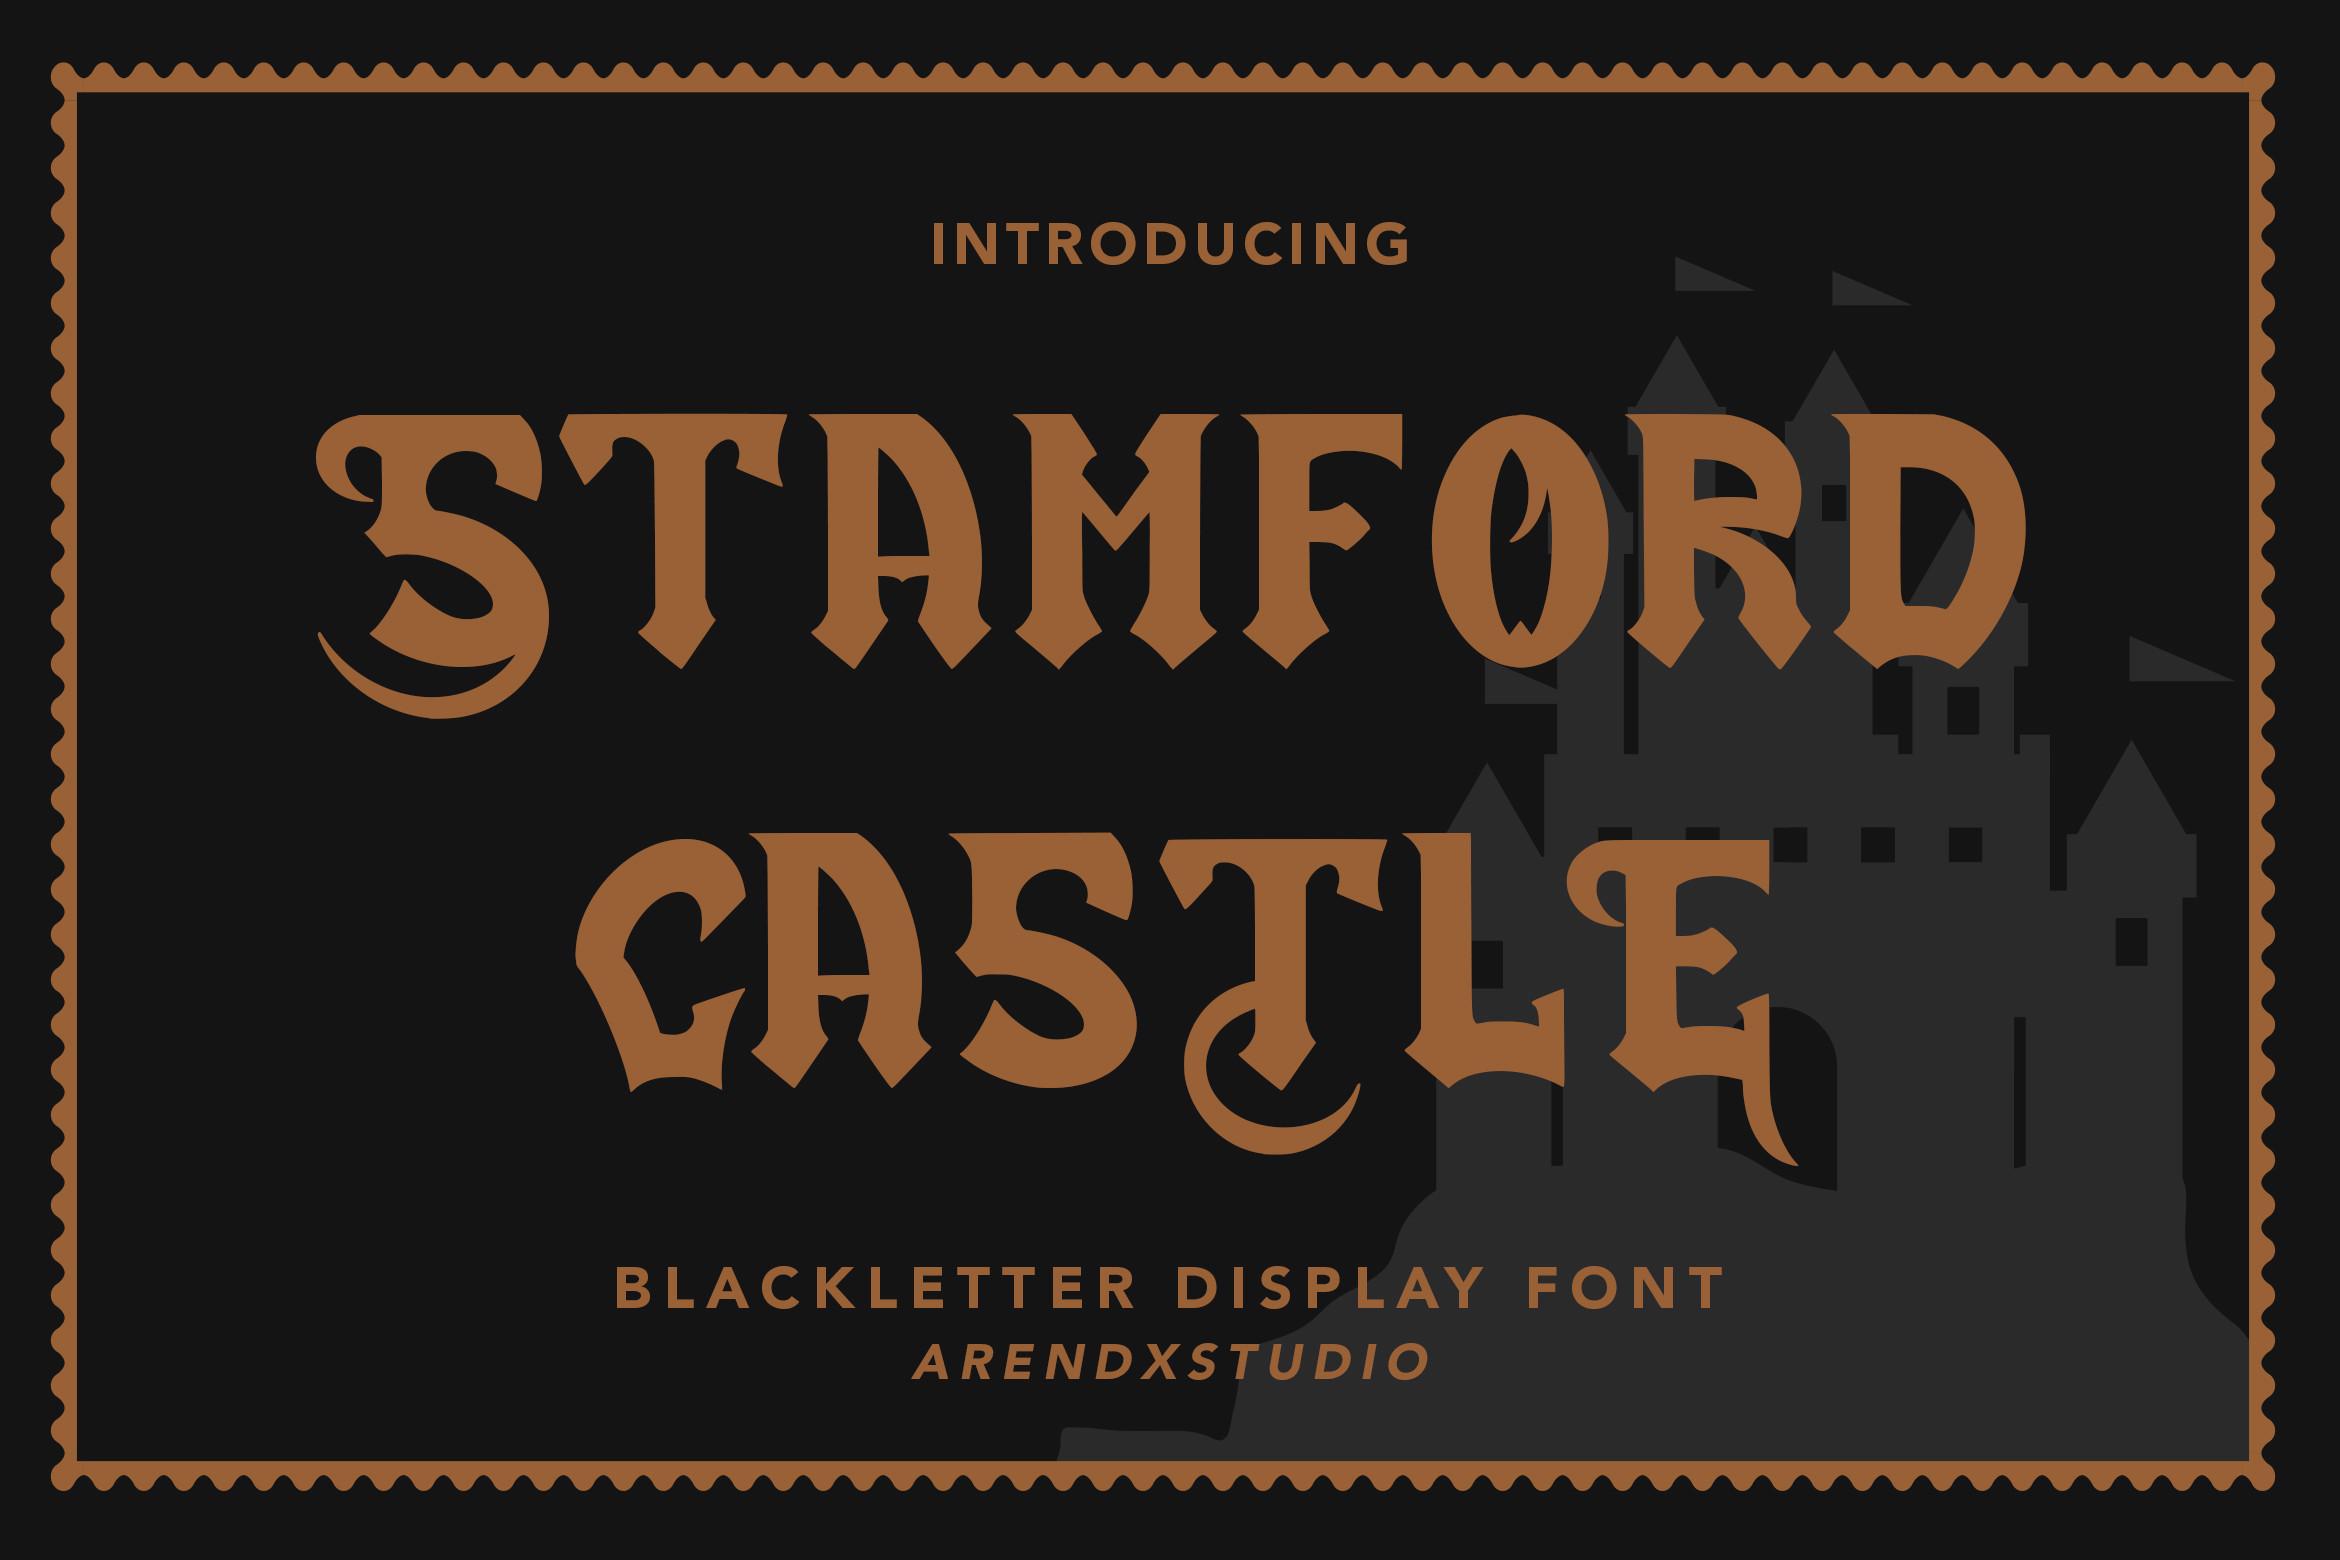 Stamford Castle Font